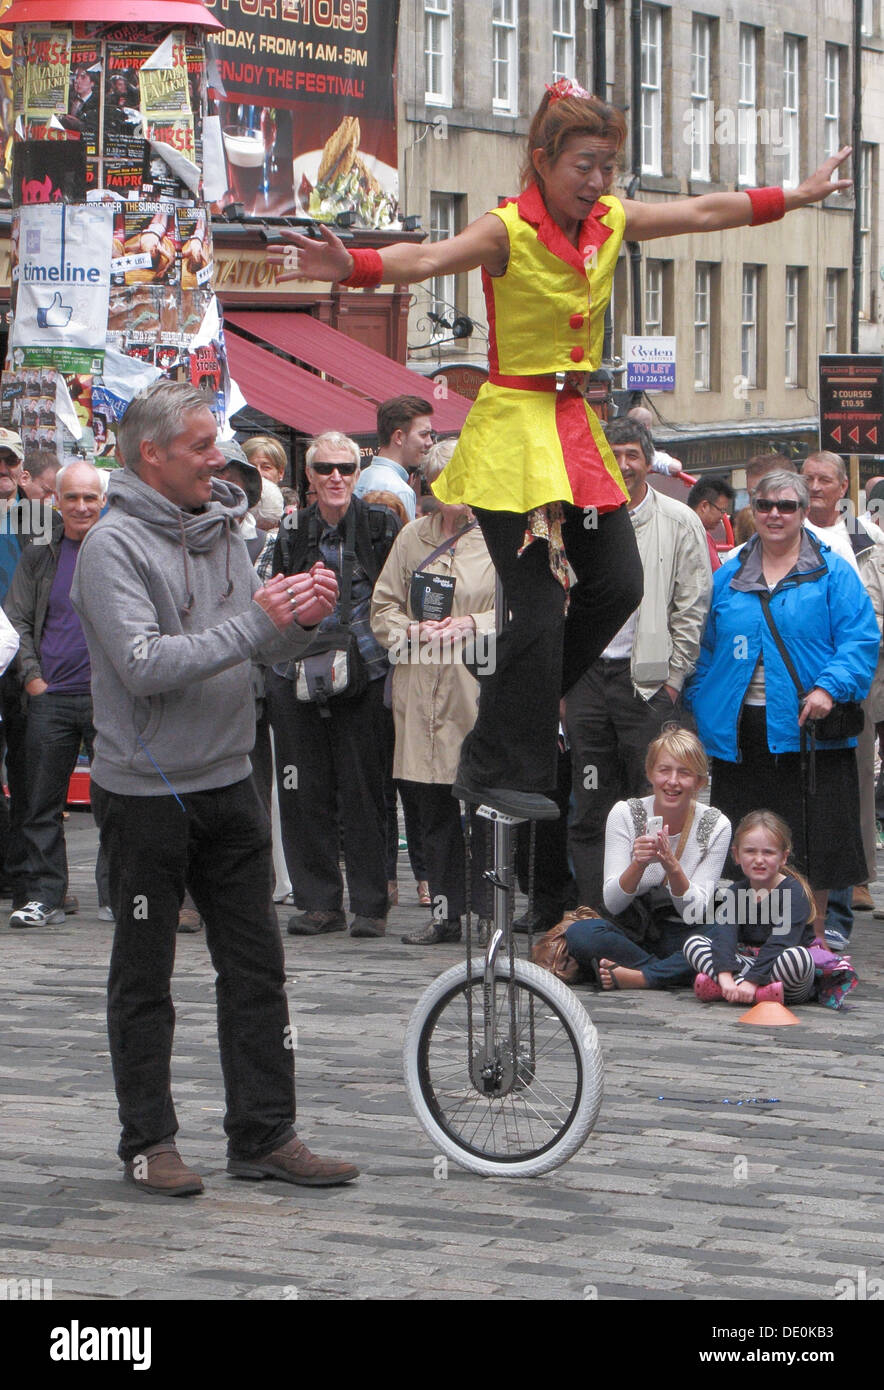 Femme Balaning Unicyclist chinois sur un monocycle, The Royal Mile, Édimbourg, Écosse, Royaume-Uni Banque D'Images